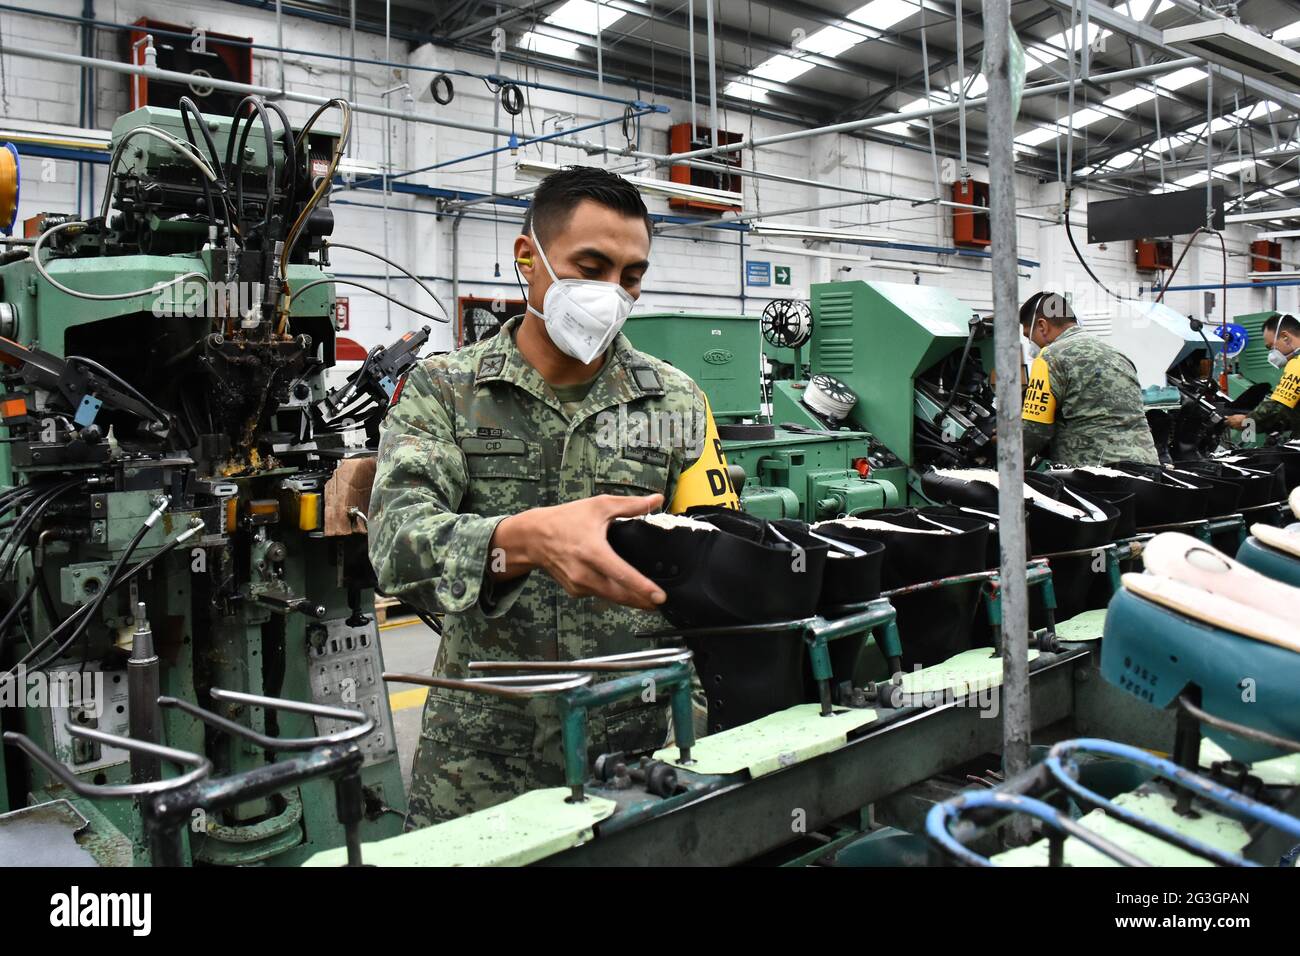 CIUDAD DE MÉXICO, MÉXICO - JUNIO 16: Un ejército es visto durante el  proceso de producción de botas del Ejército Mexicano en la Fábrica de Ropa  y Equipo Militar fabricados con materiales